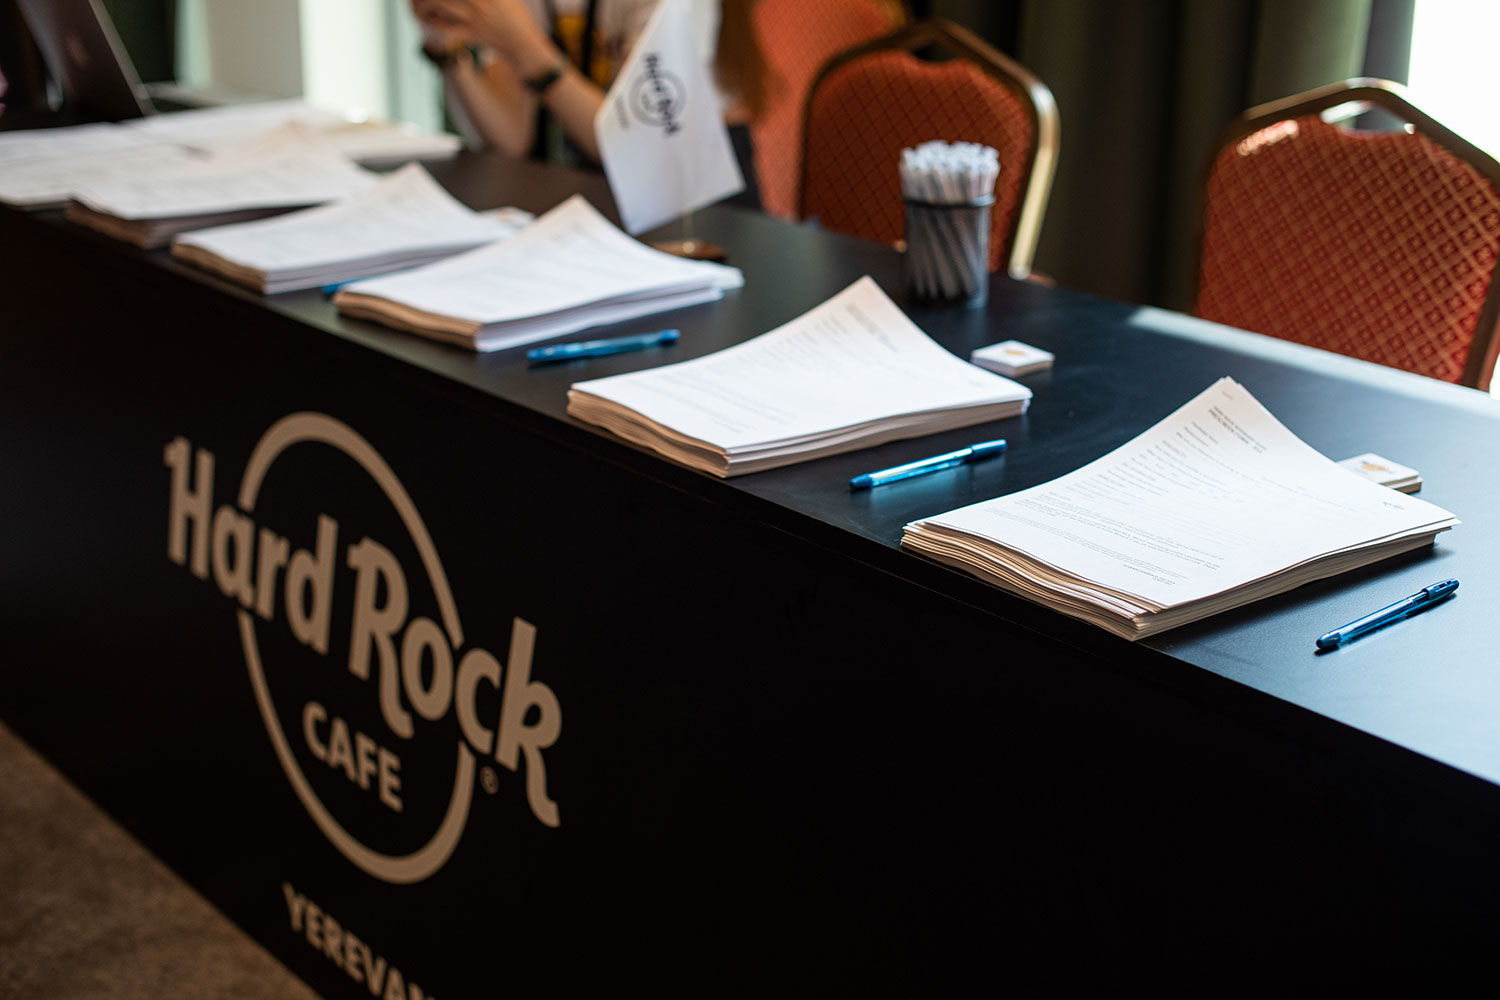 «Hard Rock Cafe»-ն փնտրում է թիմակիցներ՝ Երեւանը «ցնցելու» համար 